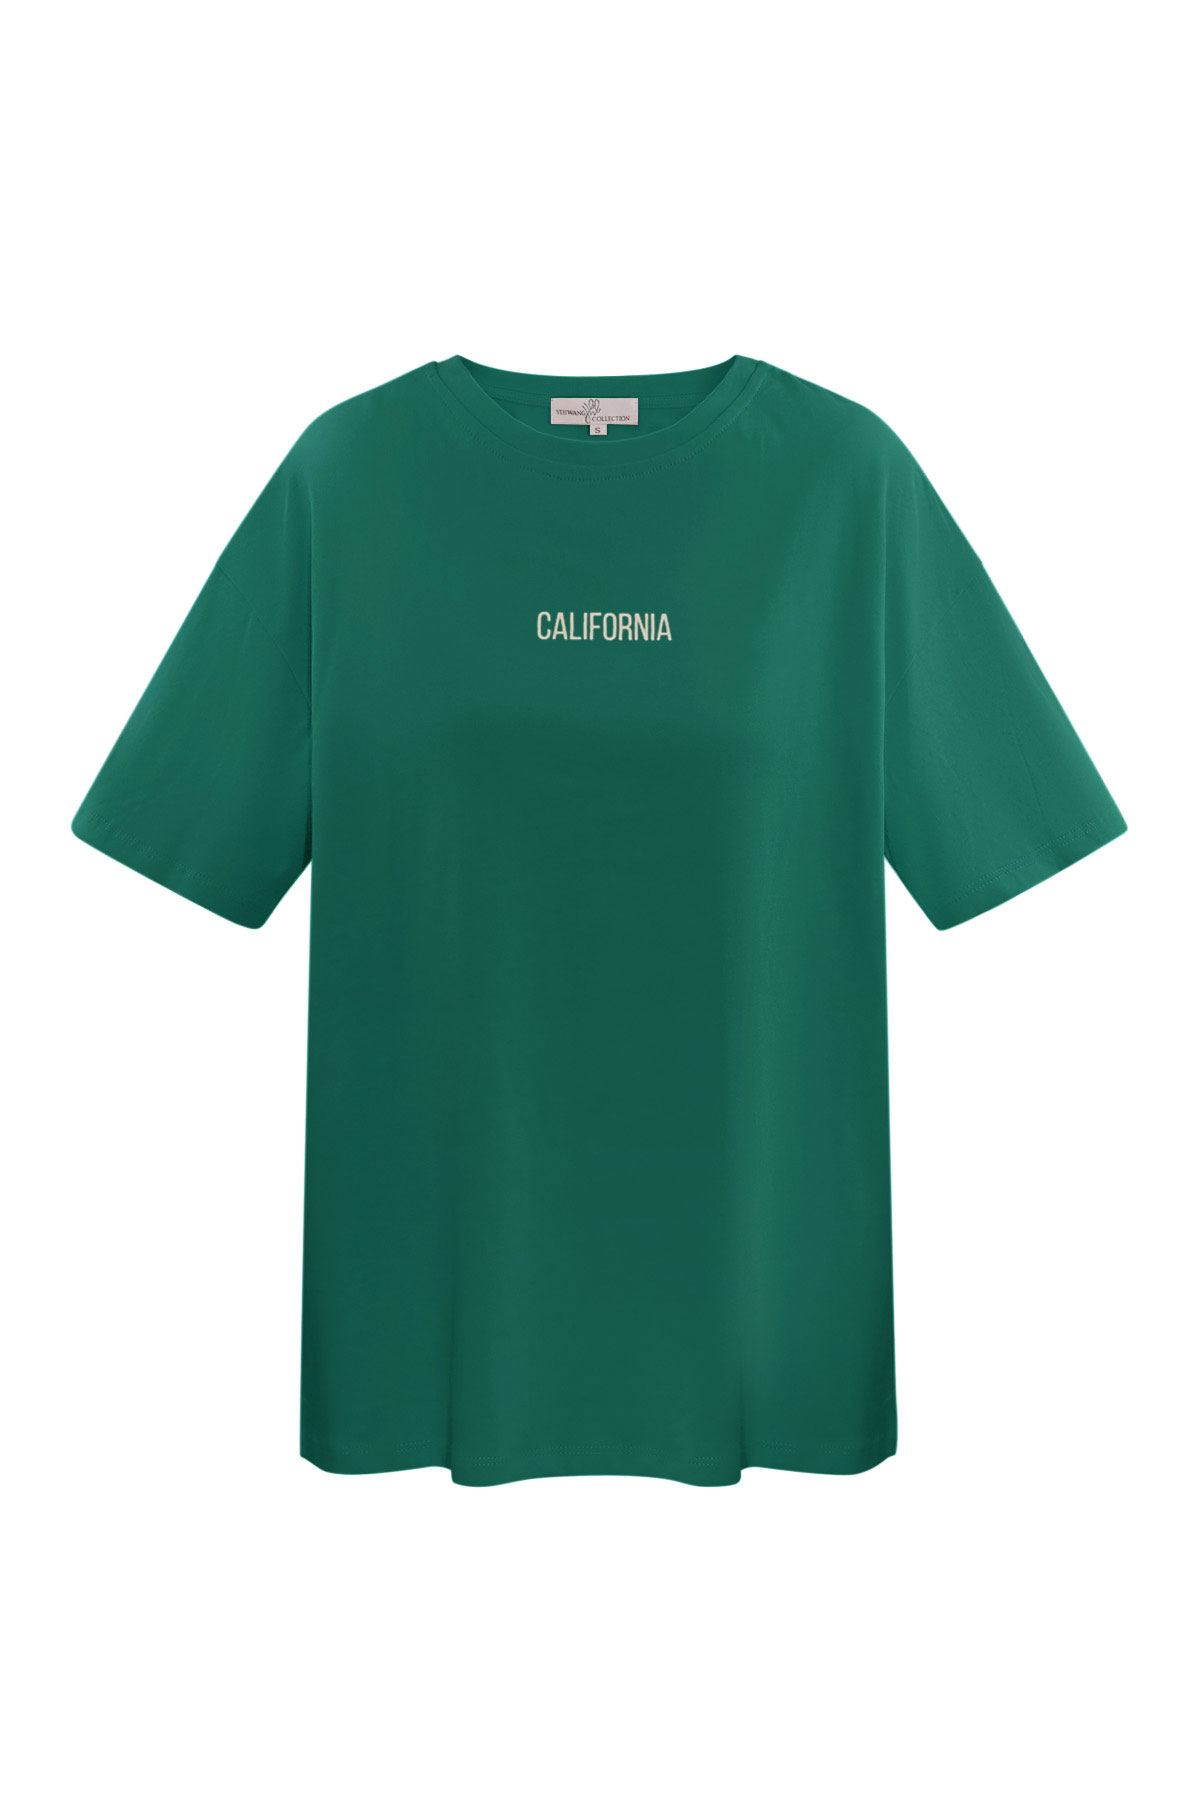 T-Shirt Kalifornien - grün